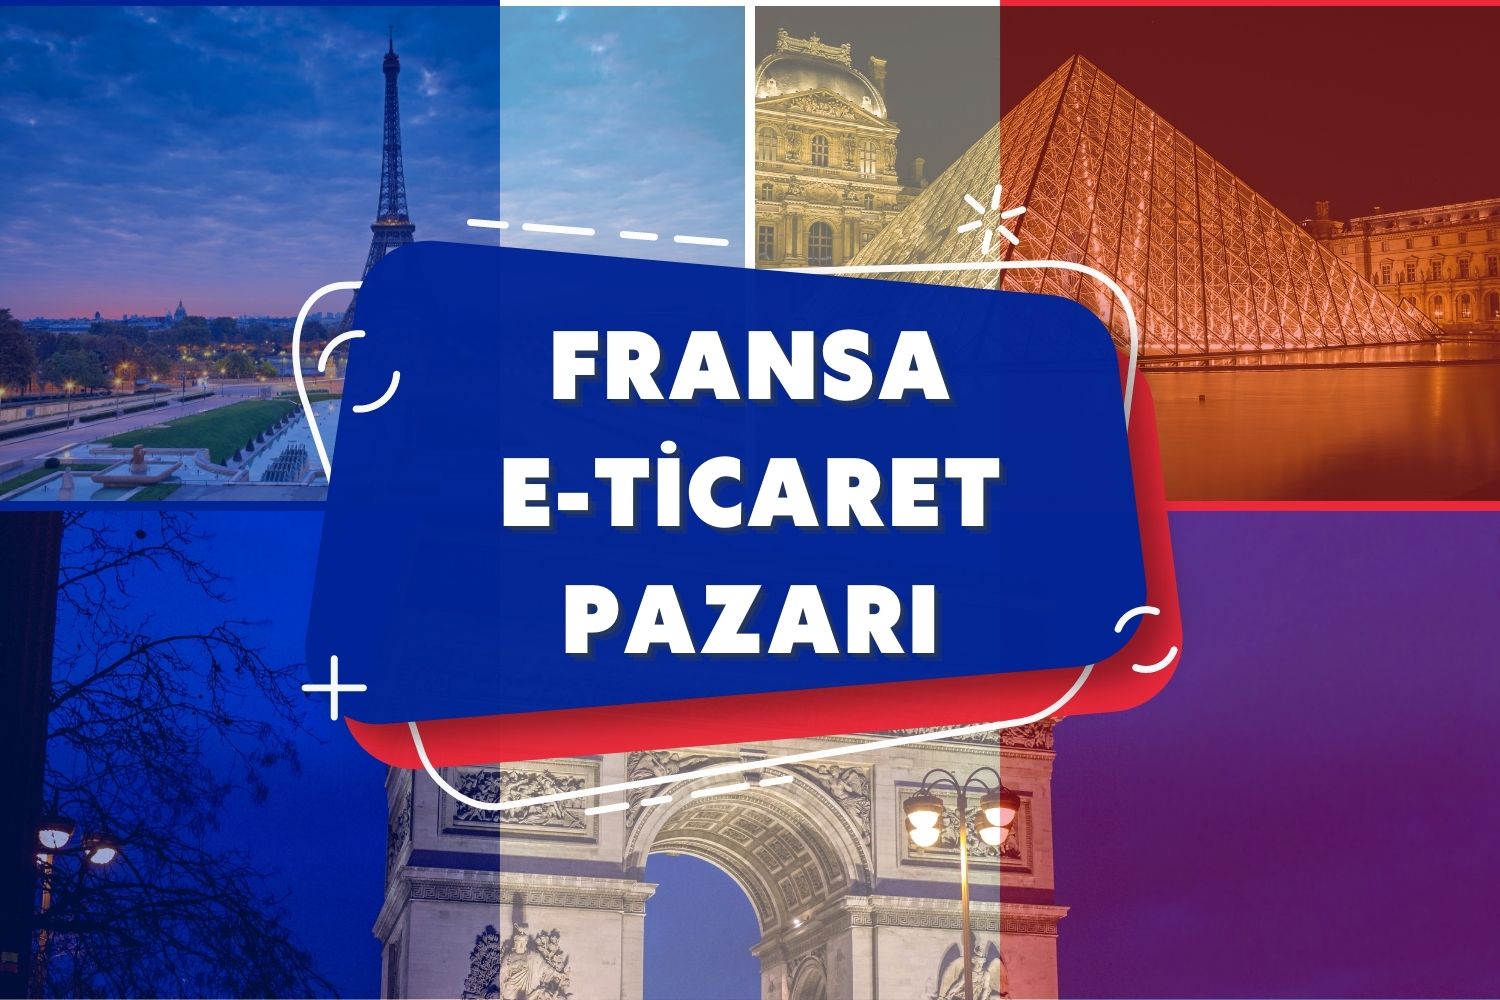 fransa-eticaret-pazarı-2023-cdiscount-fransaya-ihracat-yapmak-eihracat-danismanlik-eticaret-danismanlik-amazon-fransa